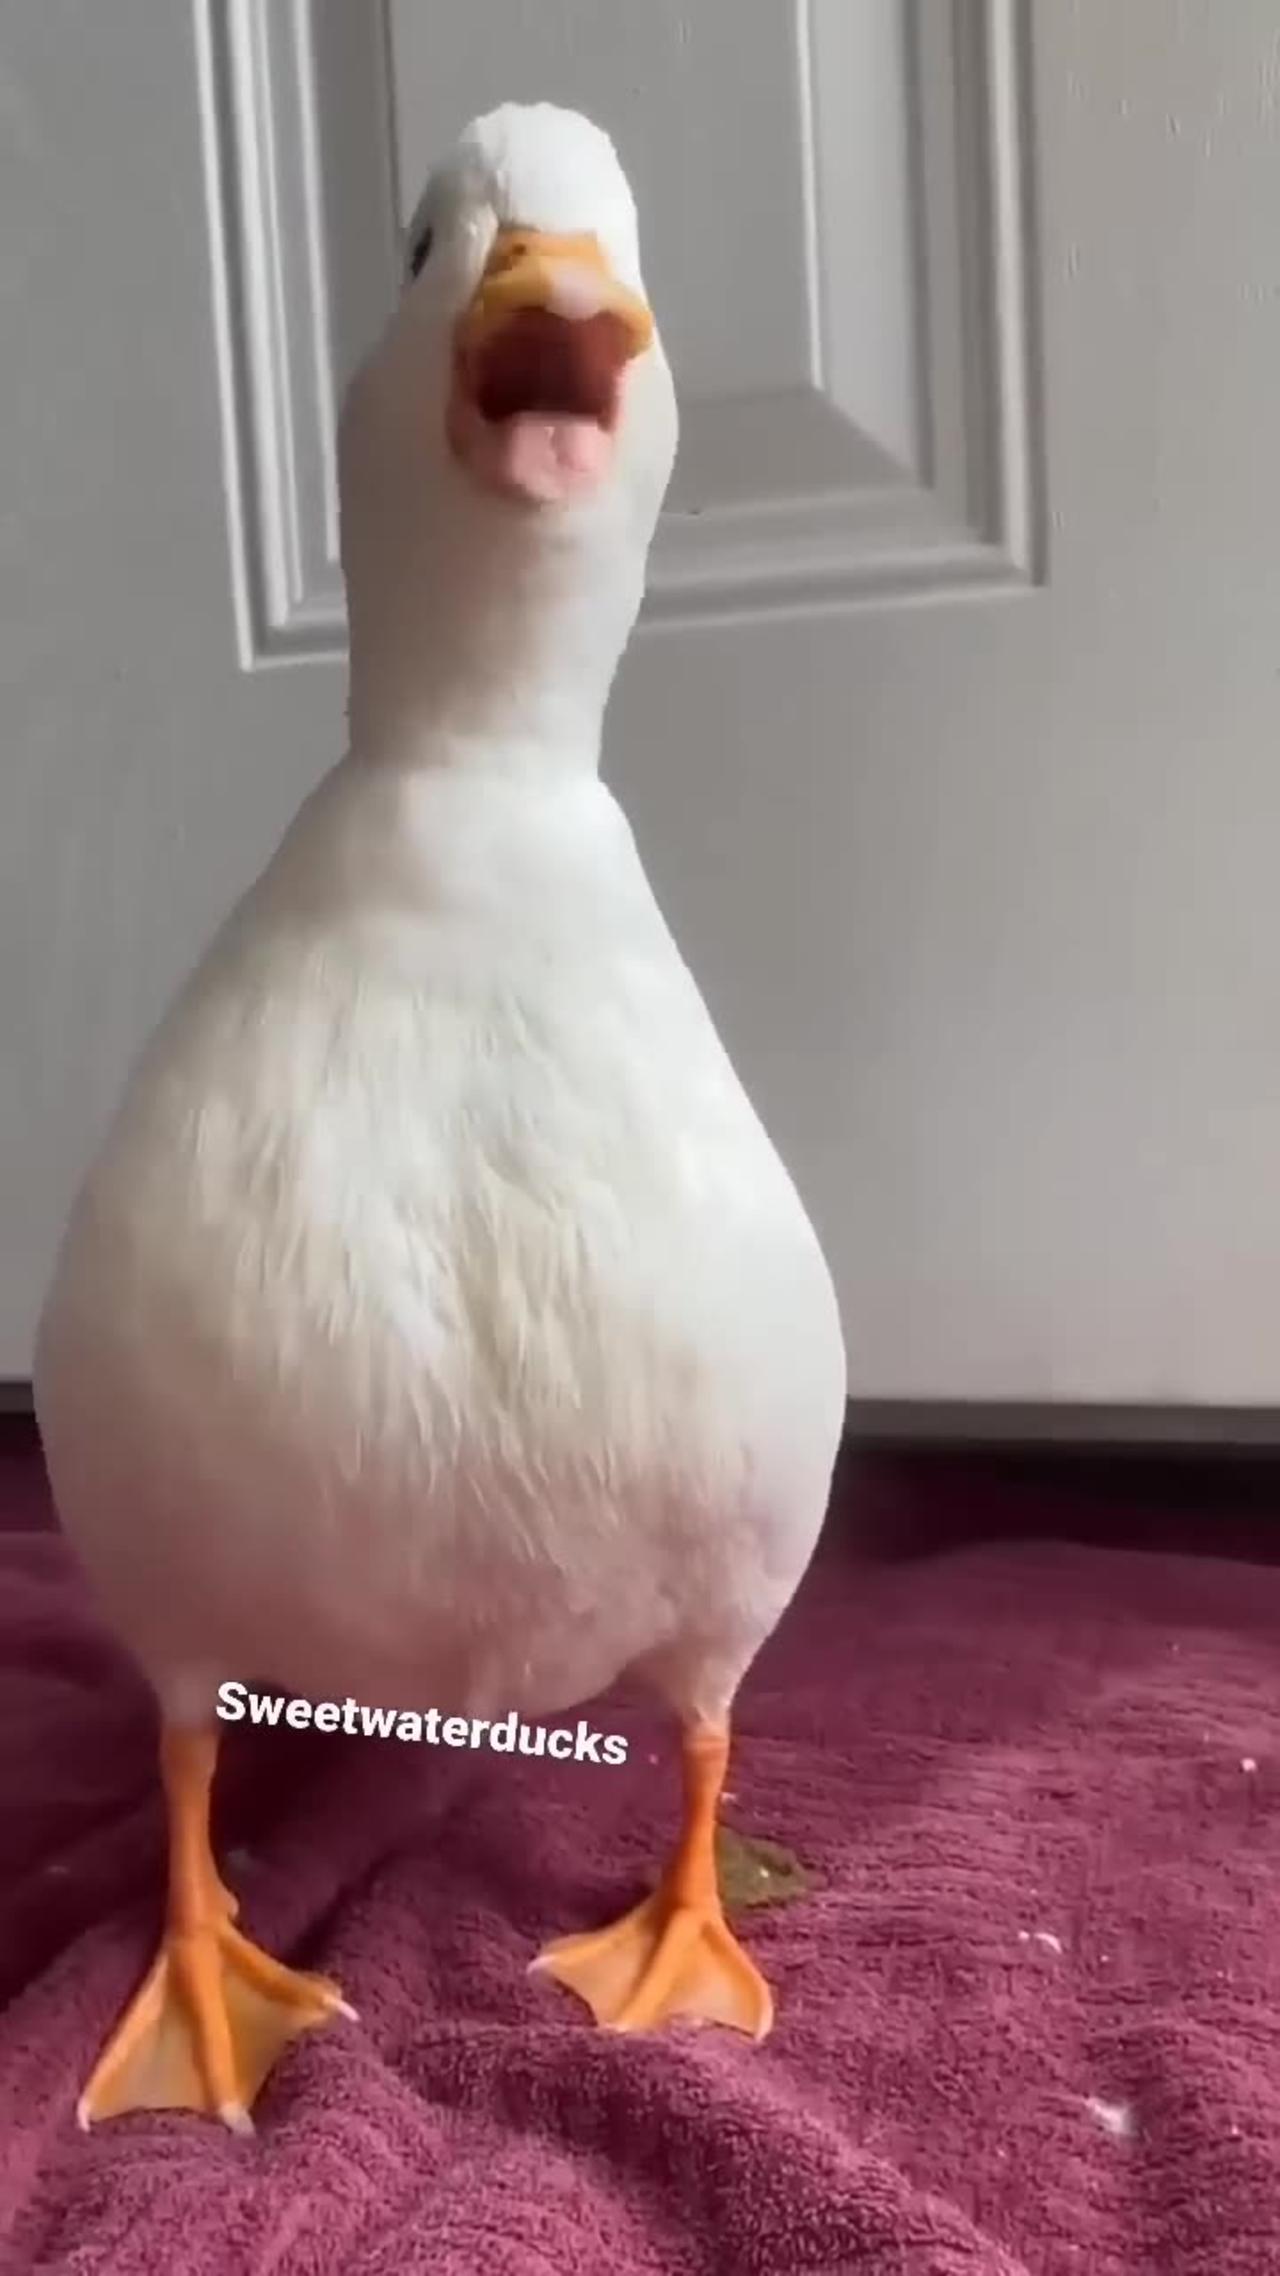 sweet duck 🦆🦆 sounds #shortsvideo #animals